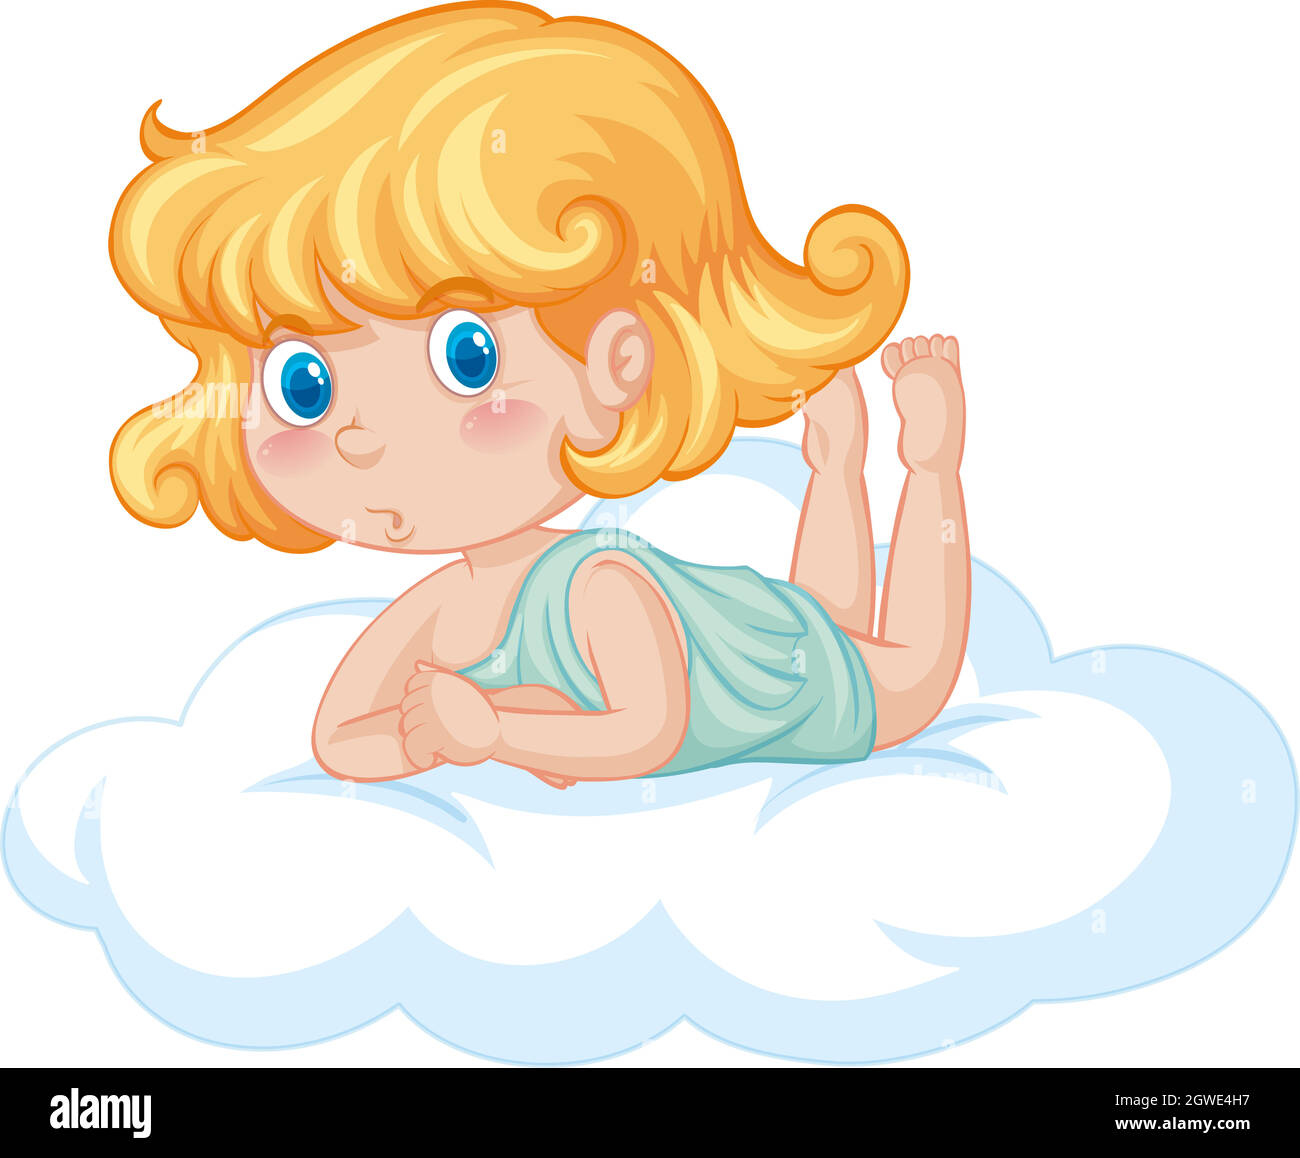 Joli ange sur un nuage moelleux Illustration de Vecteur